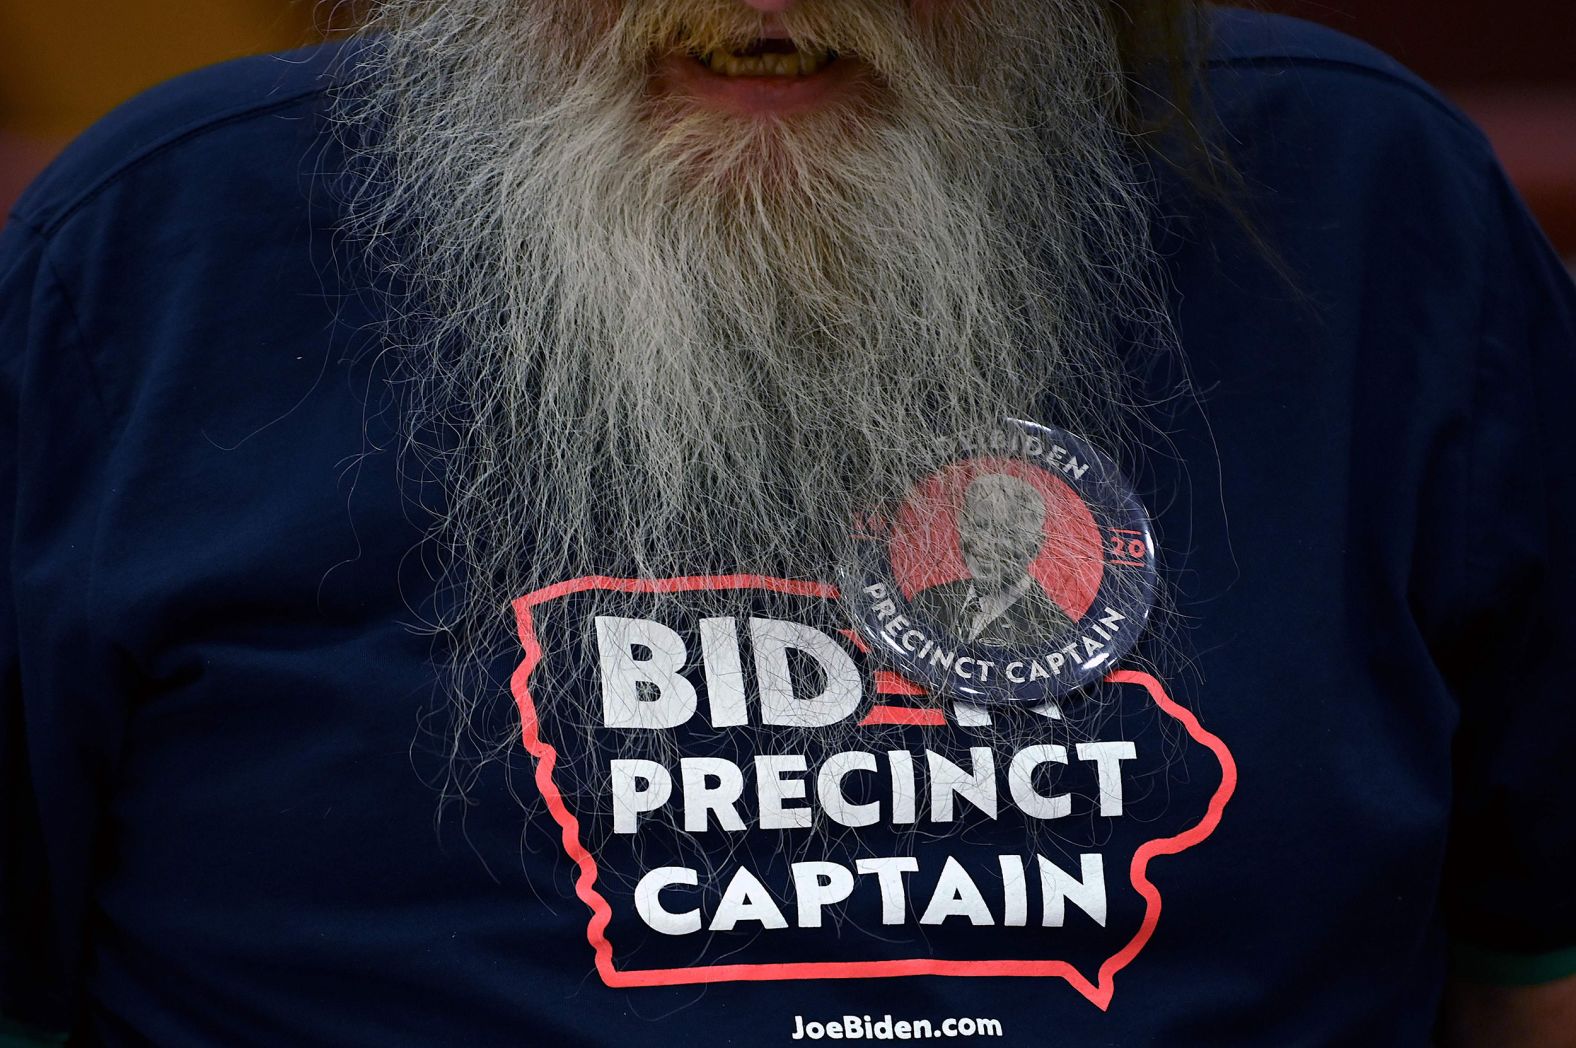 A precinct captain for Biden prepares for a caucus in Des Moines.